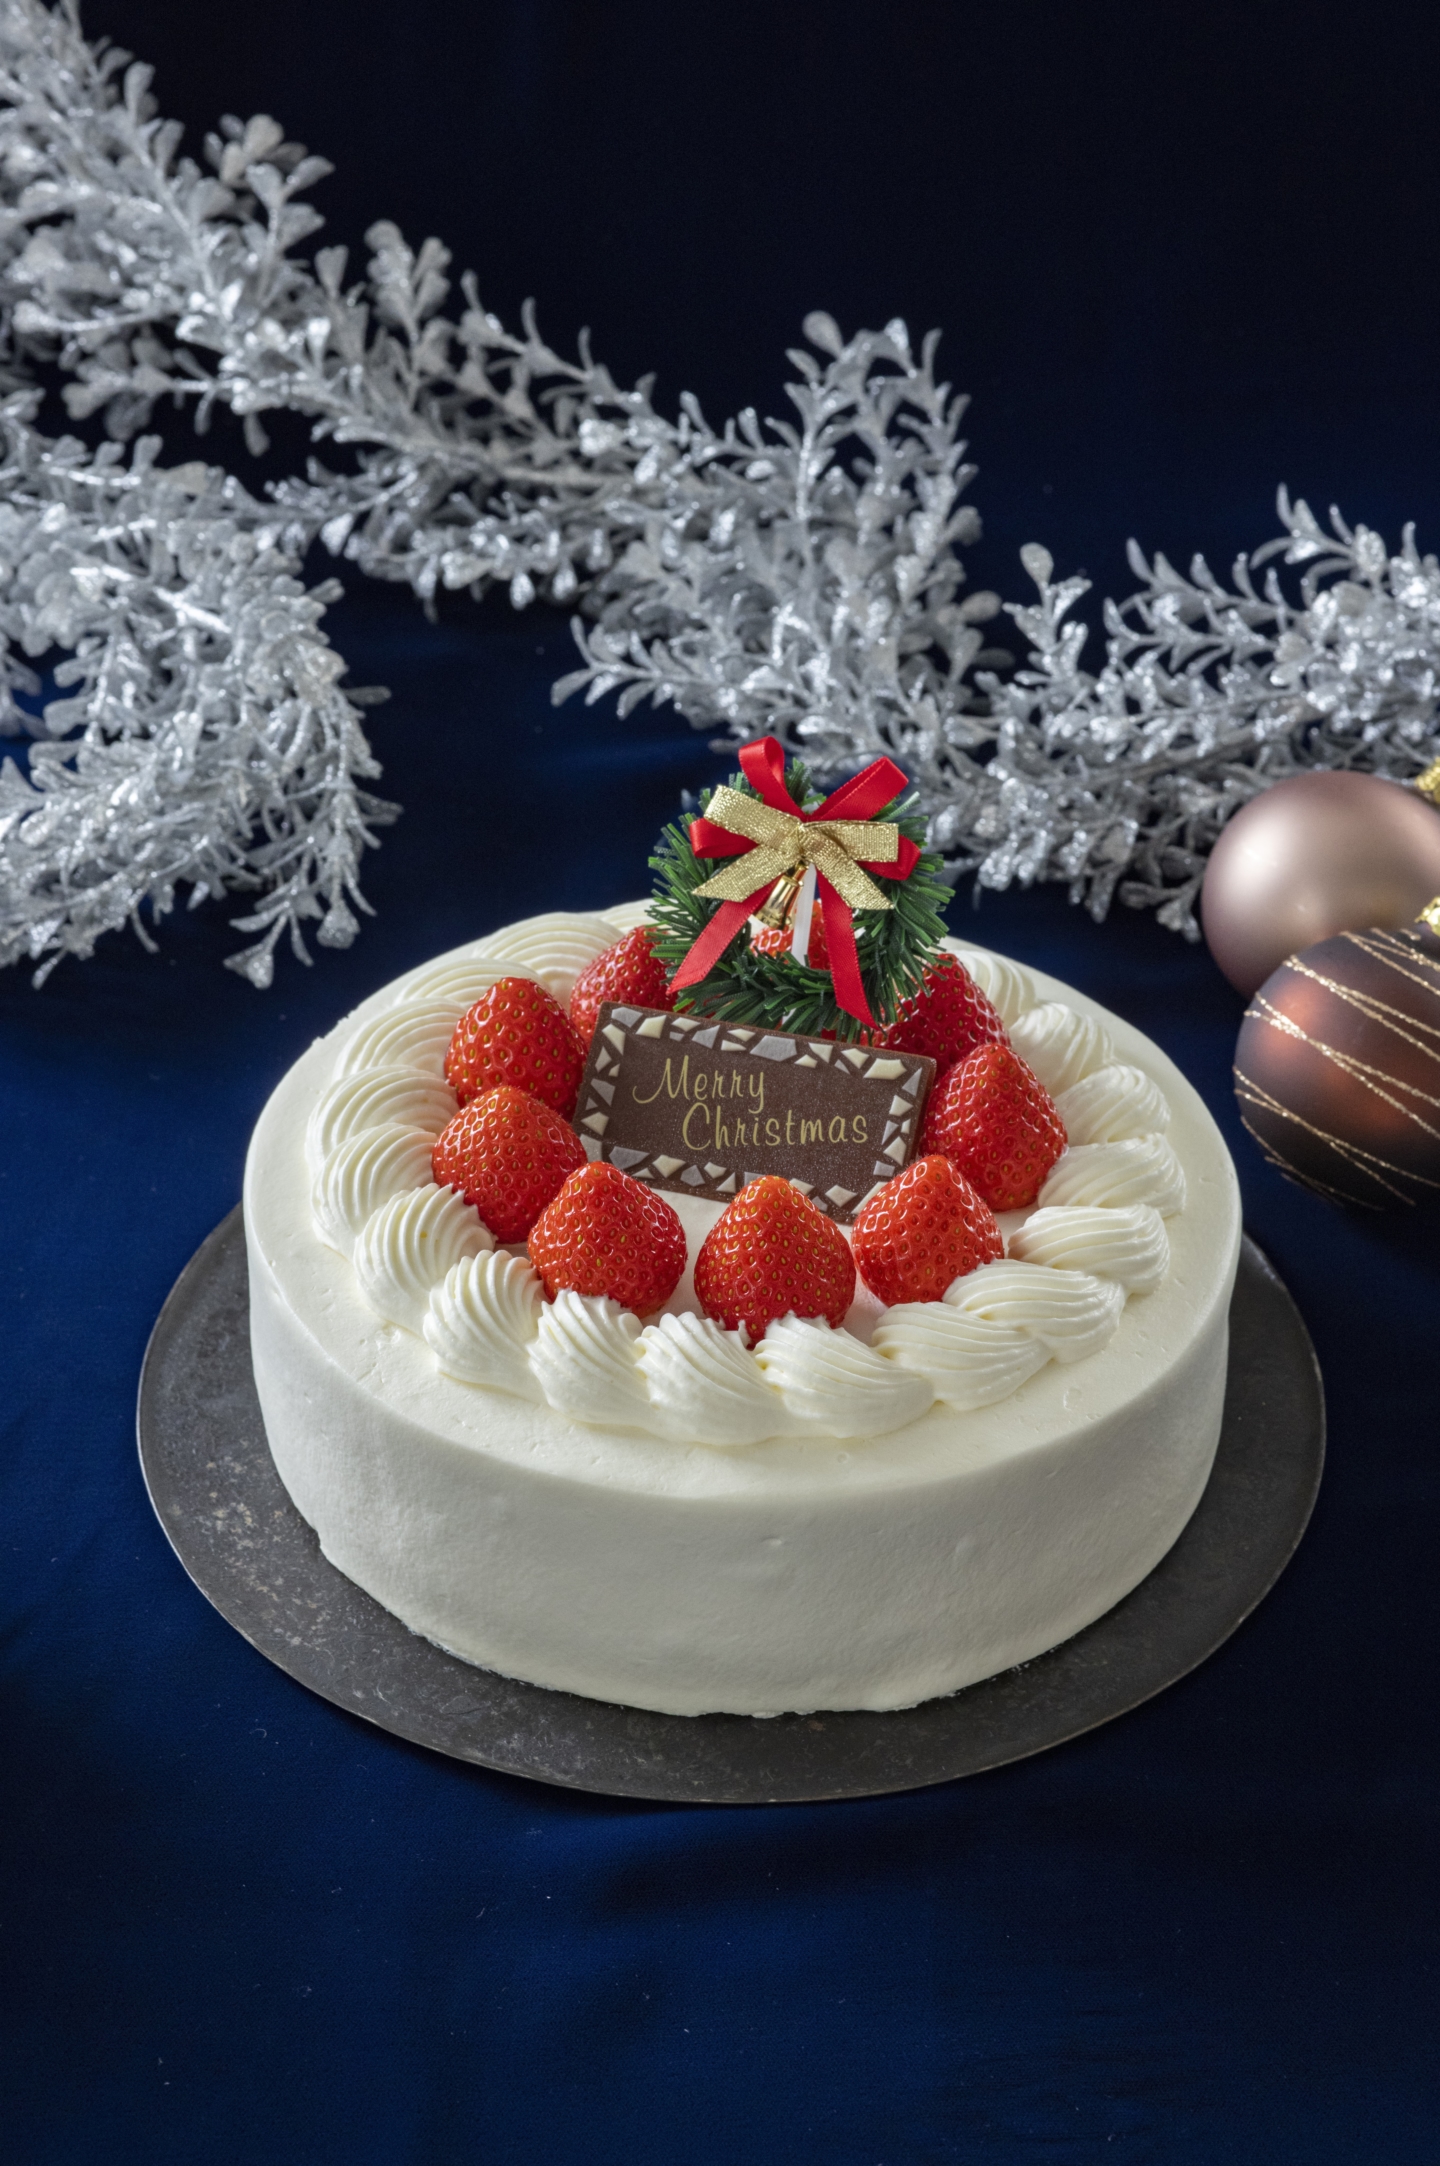 [Nihonbashi Sembikiya Sohonten] Trouvez votre gâteau de Noël cette année chez Sembikiya Sohonten